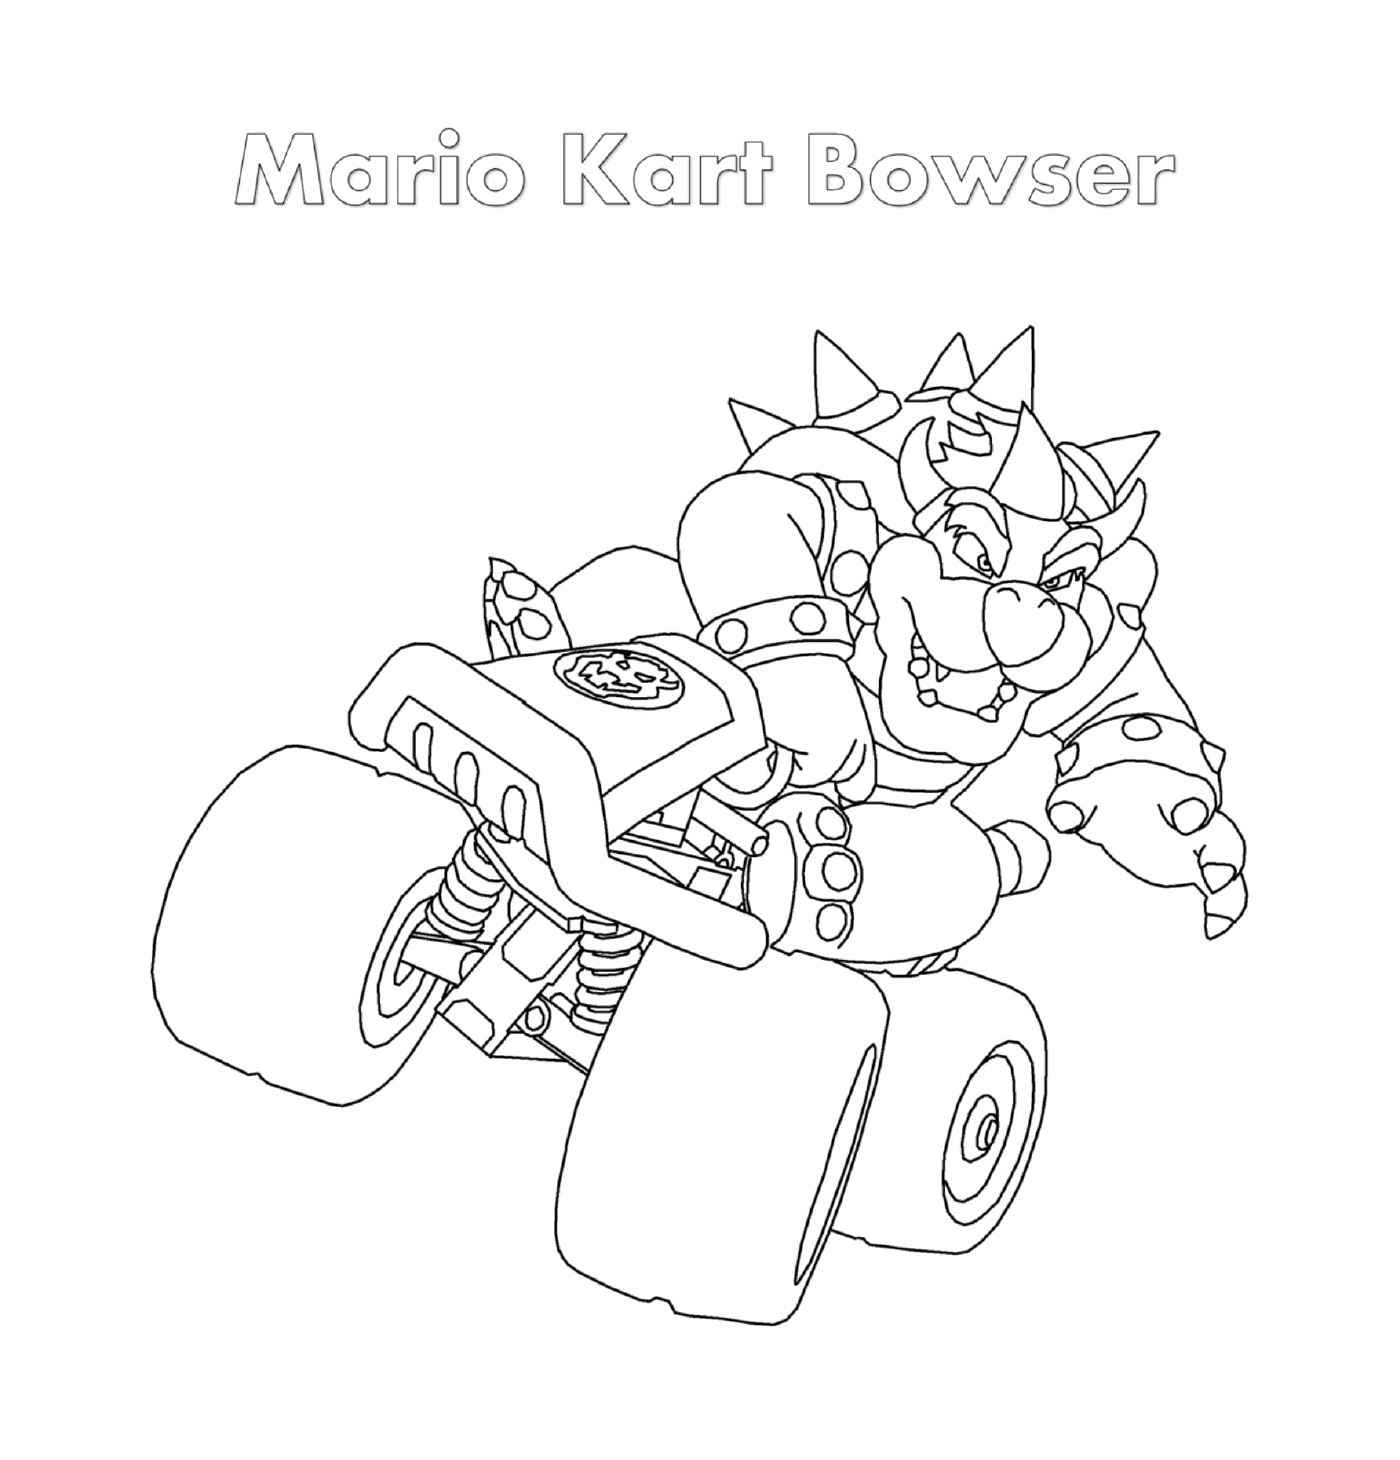  Bowser en Mario Kart de Nintendo 